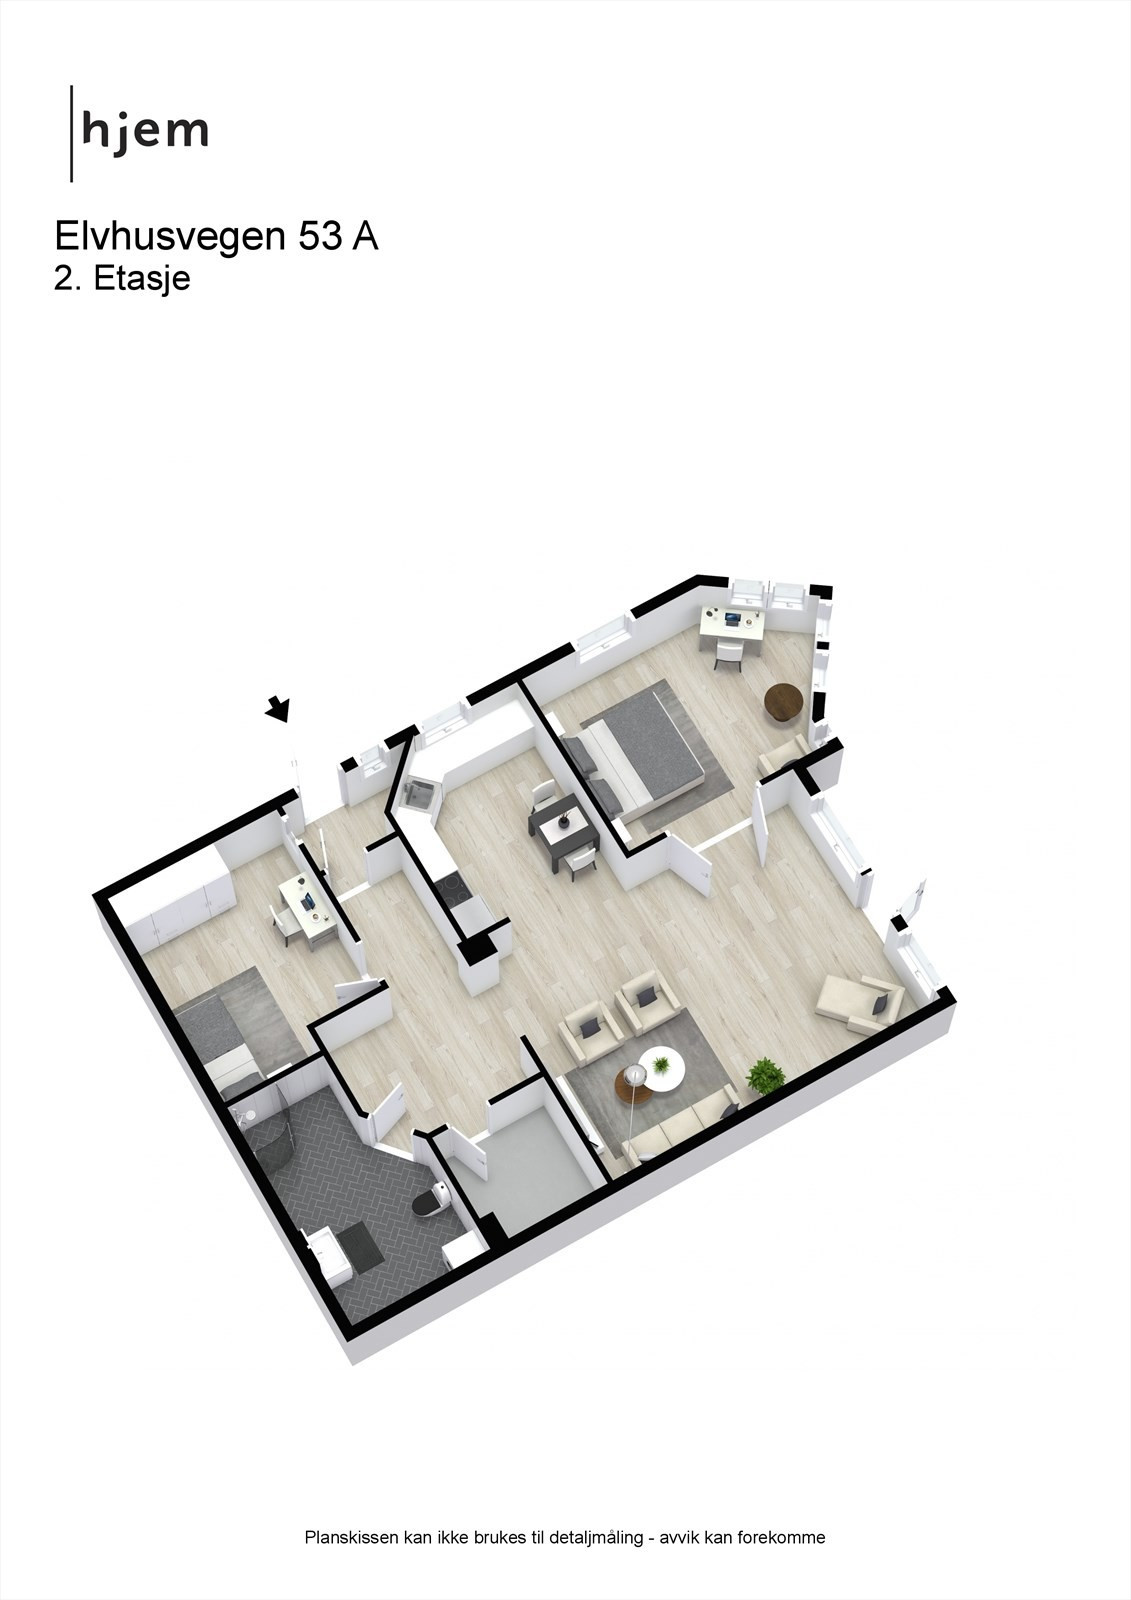 3D planillustrasjon av leiligheten.